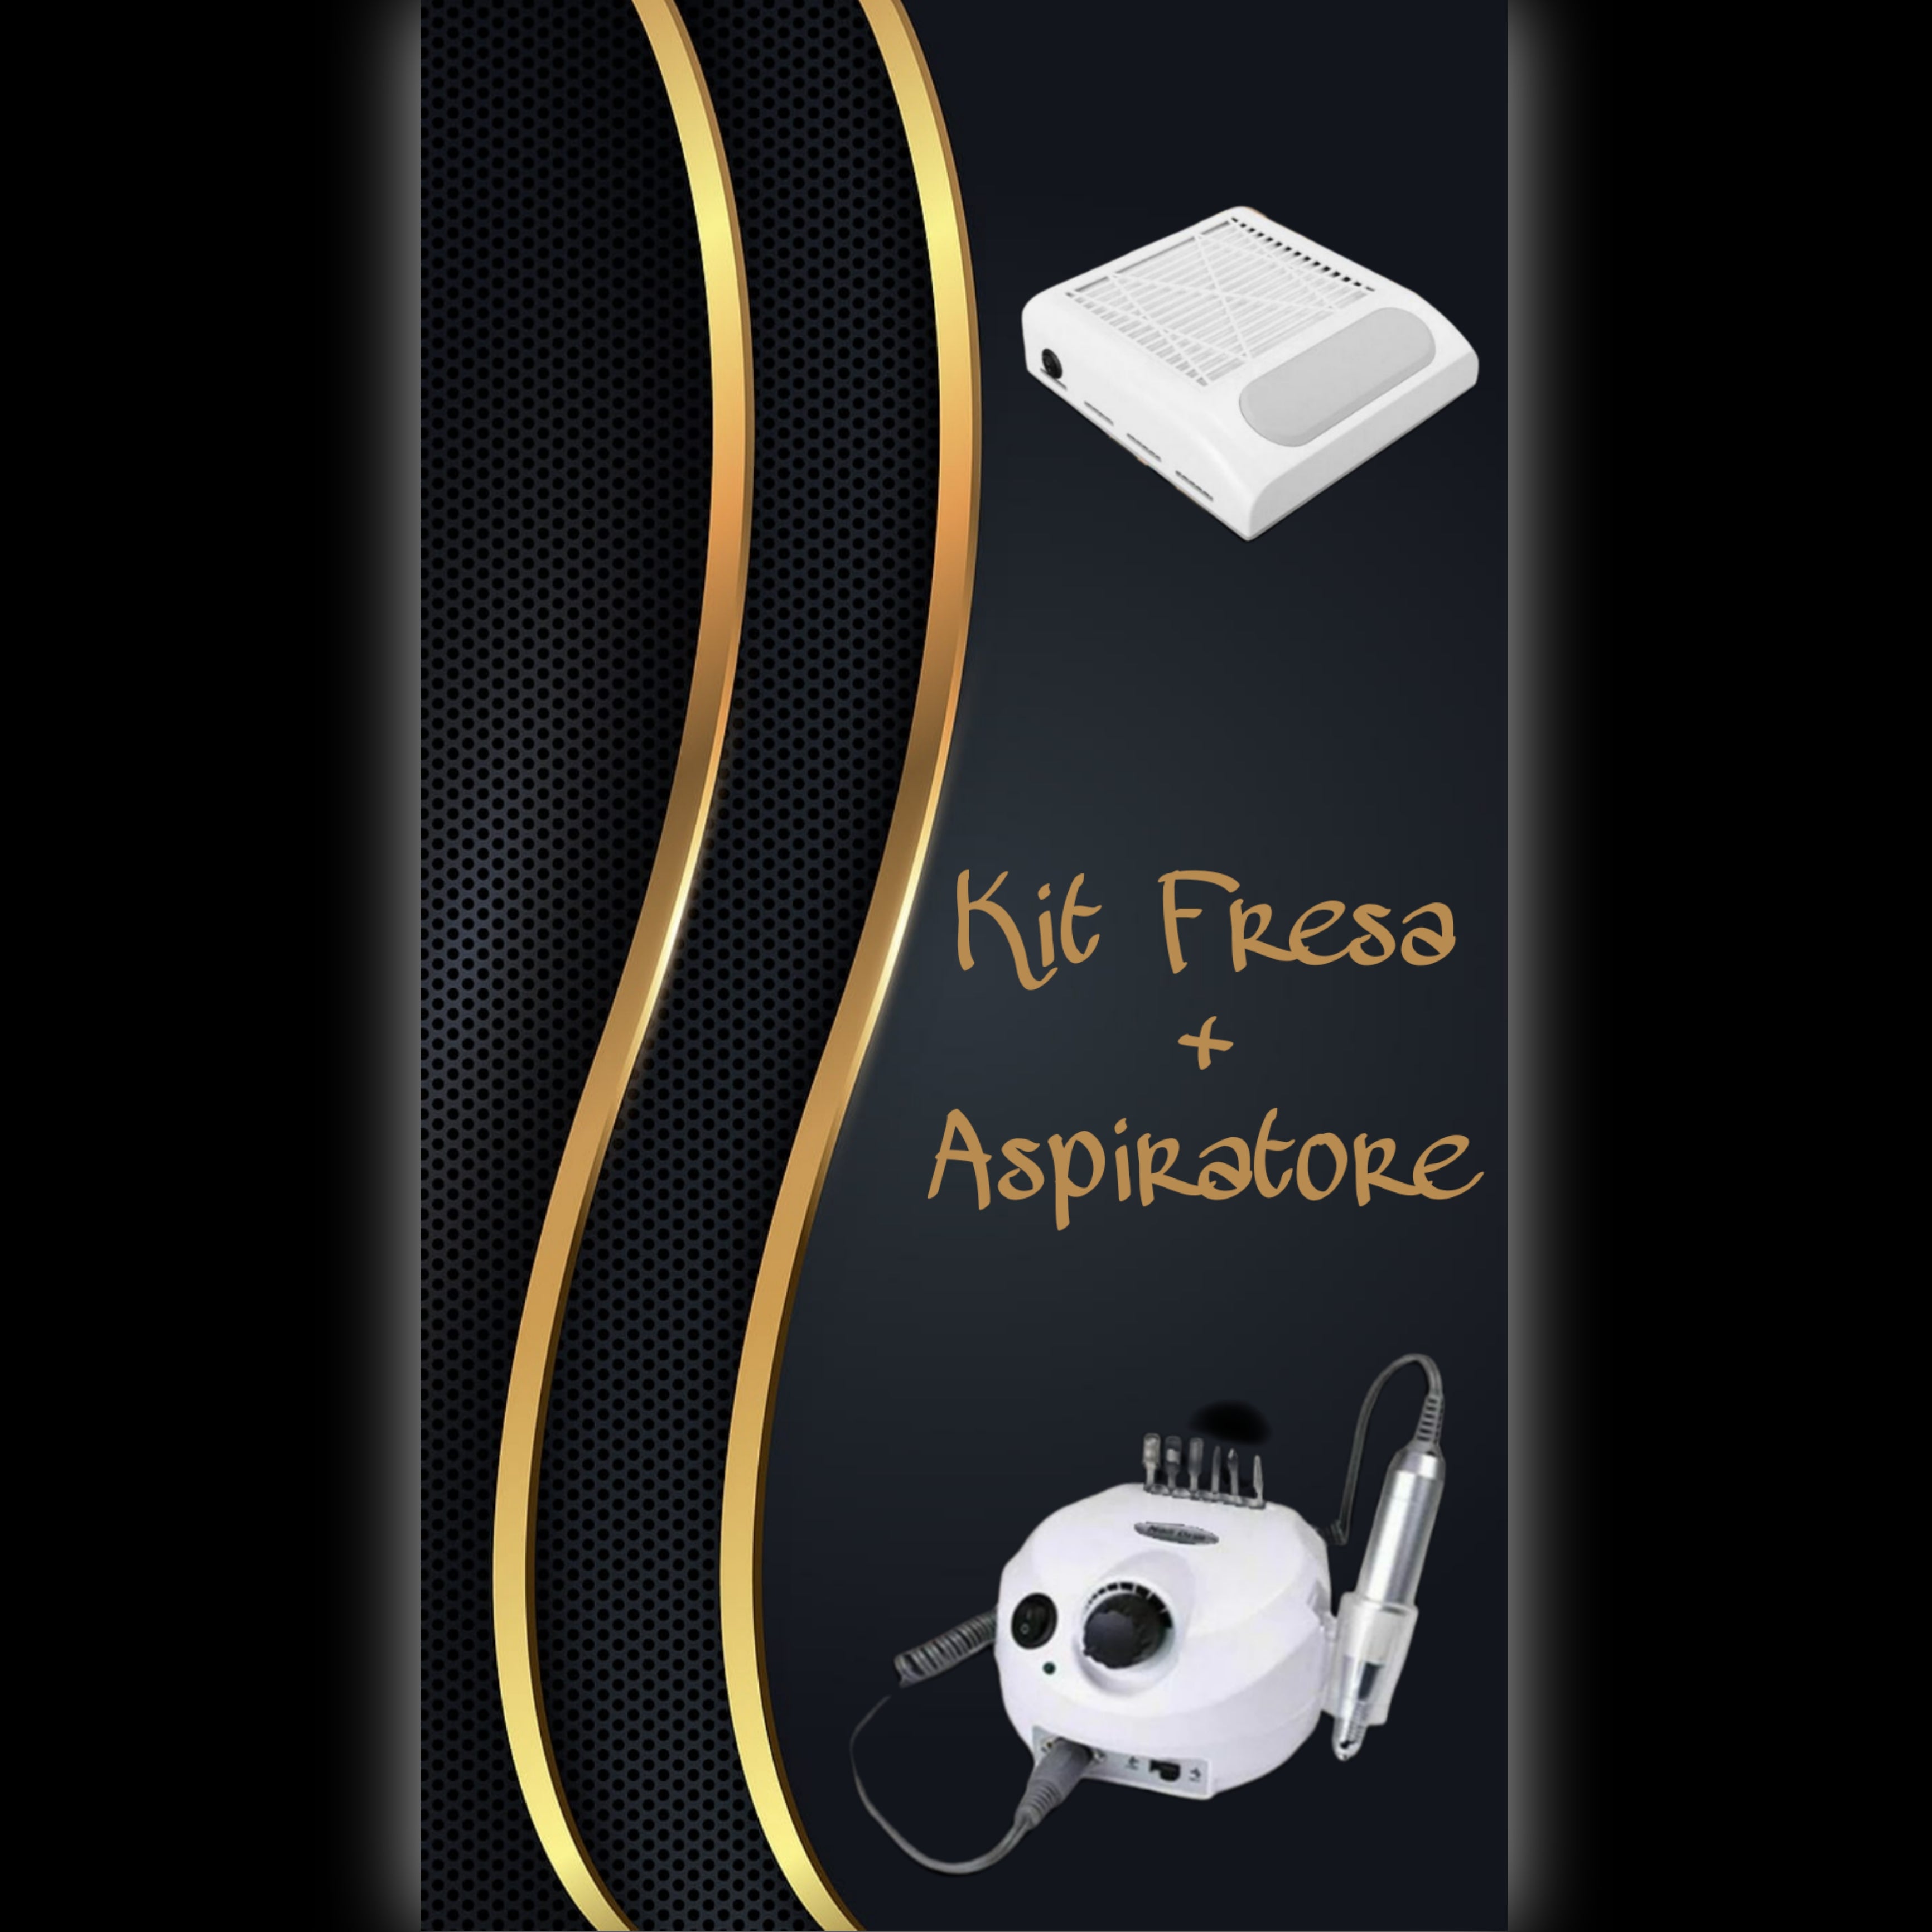 Aspiratore Dustek PRO 120W include Manipolo Fresa e Lampadina LED